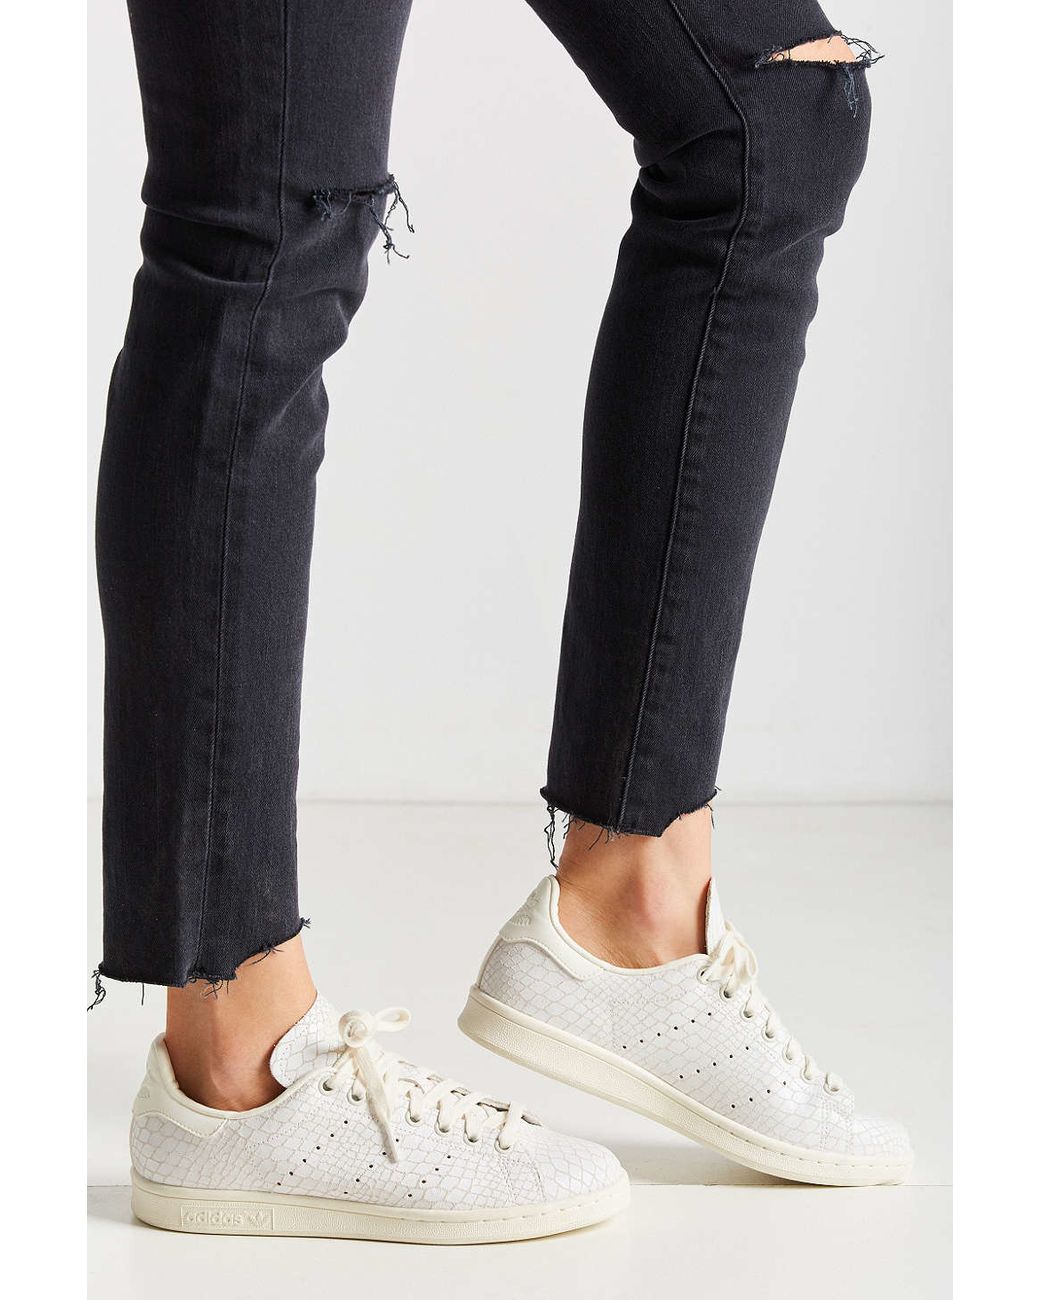 Zelfrespect distillatie ontsnapping uit de gevangenis adidas Originals Stan Smith Croc-Embossed Leather Low-Top Sneakers in White  | Lyst